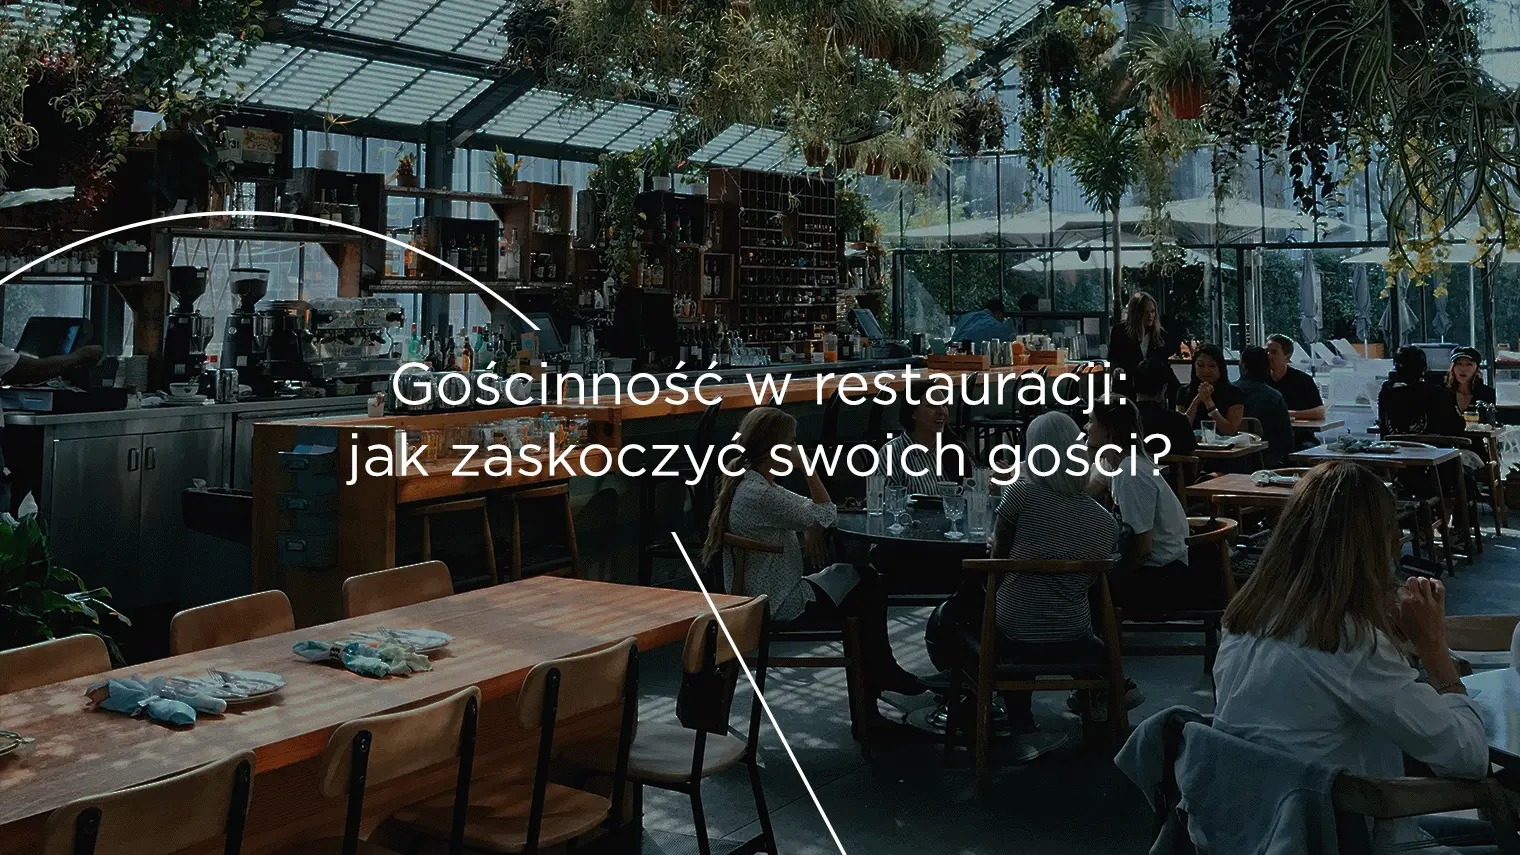 Gościnność w&nbsp;restauracji: jak zaskoczyć swoich gości?